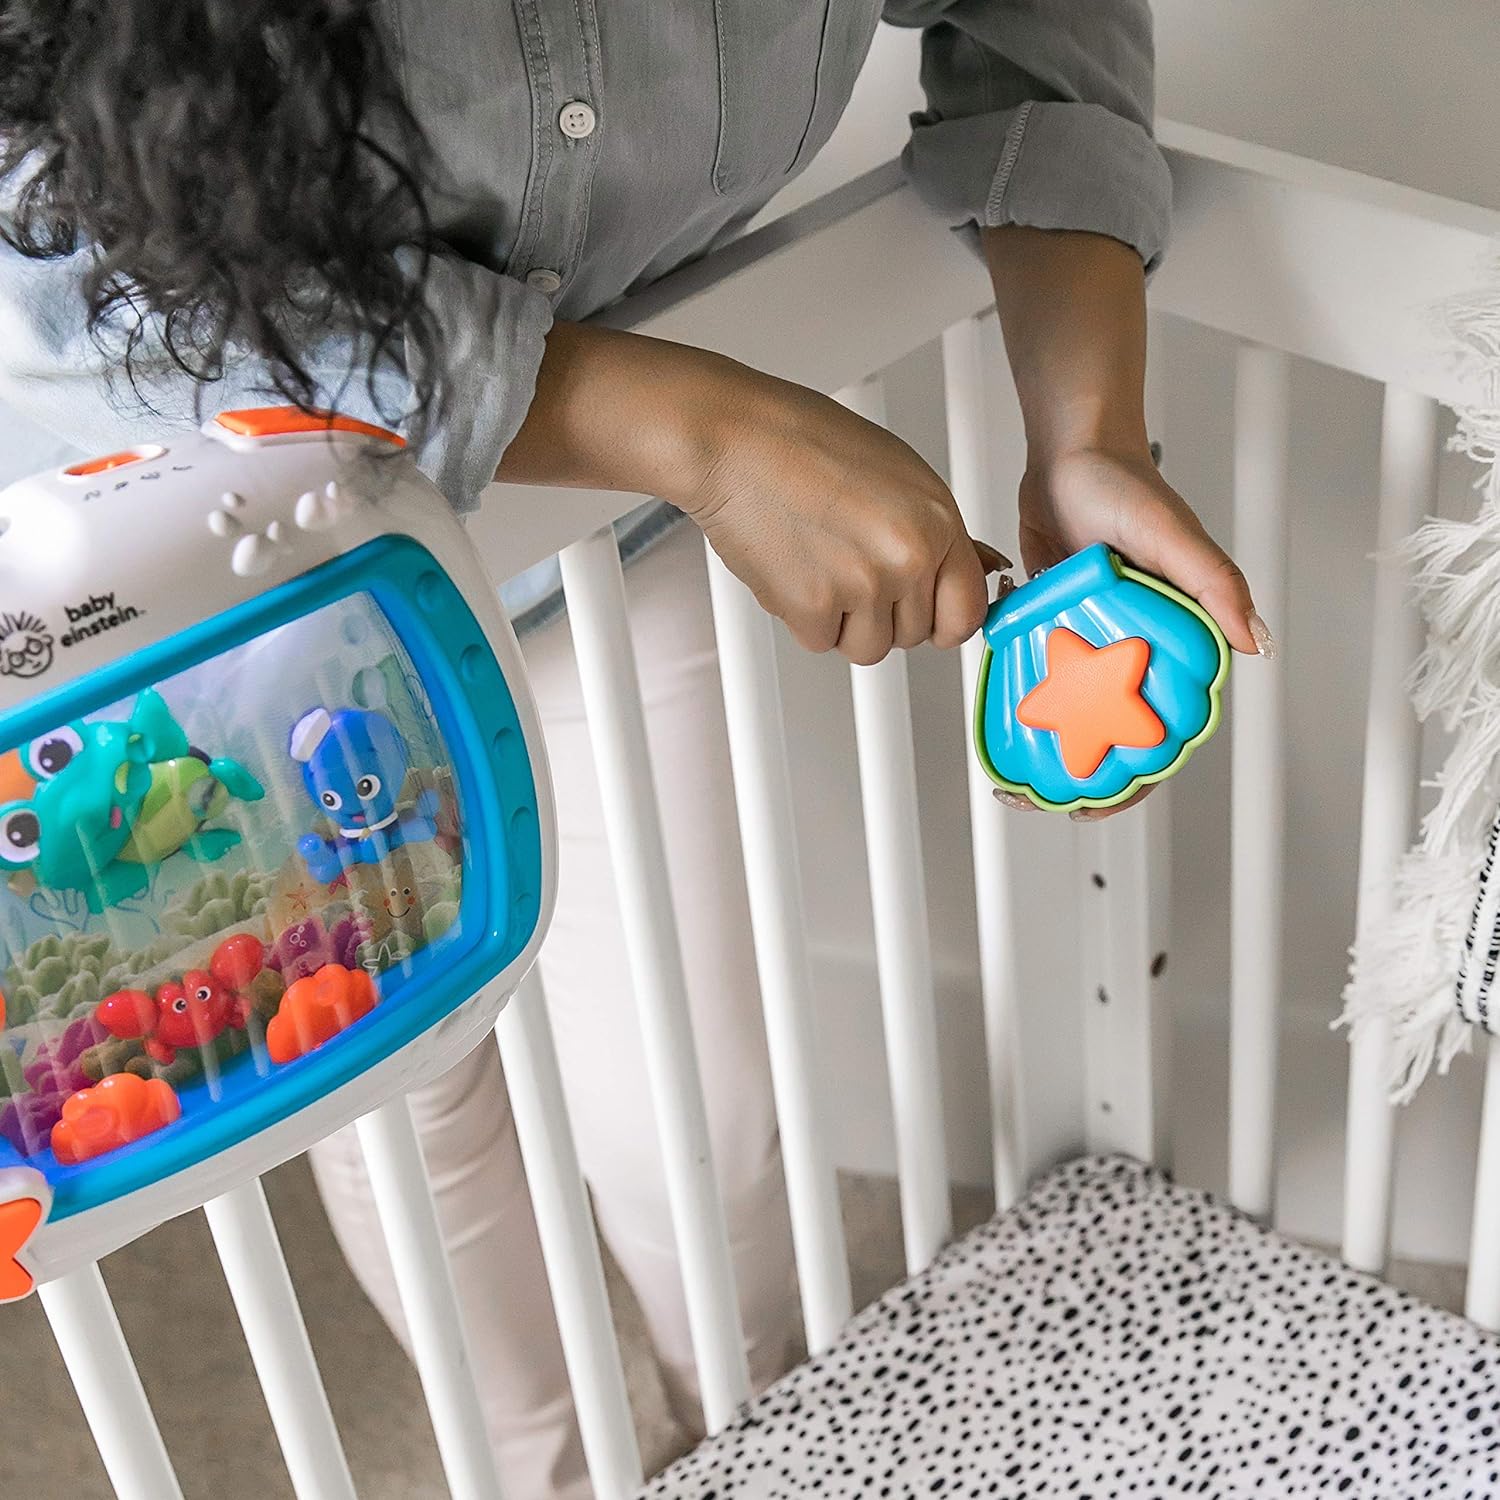 Baby Einstein Sea Dreams Soother Musical Crib Toy and Sound Machine, Newborns Plus